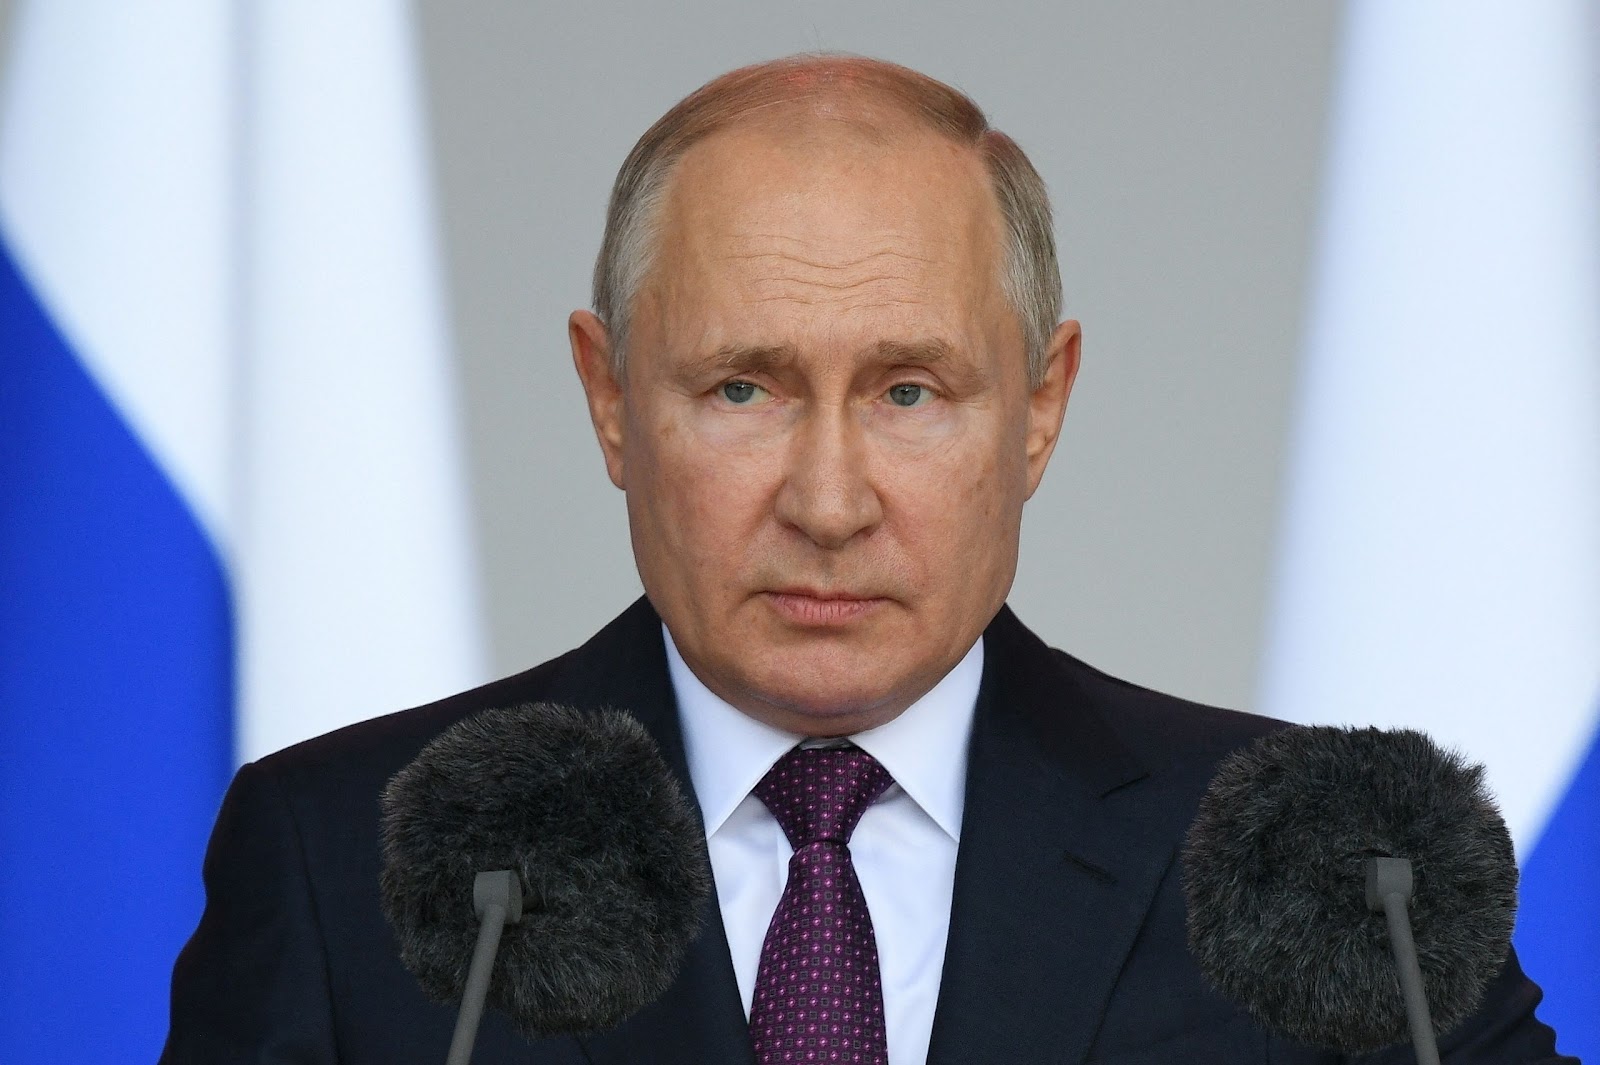 Putin alla parata sulla Piazza Rossa: ‘Non permetteremo minacce, faremo tutto per prevenire uno scontro globale’